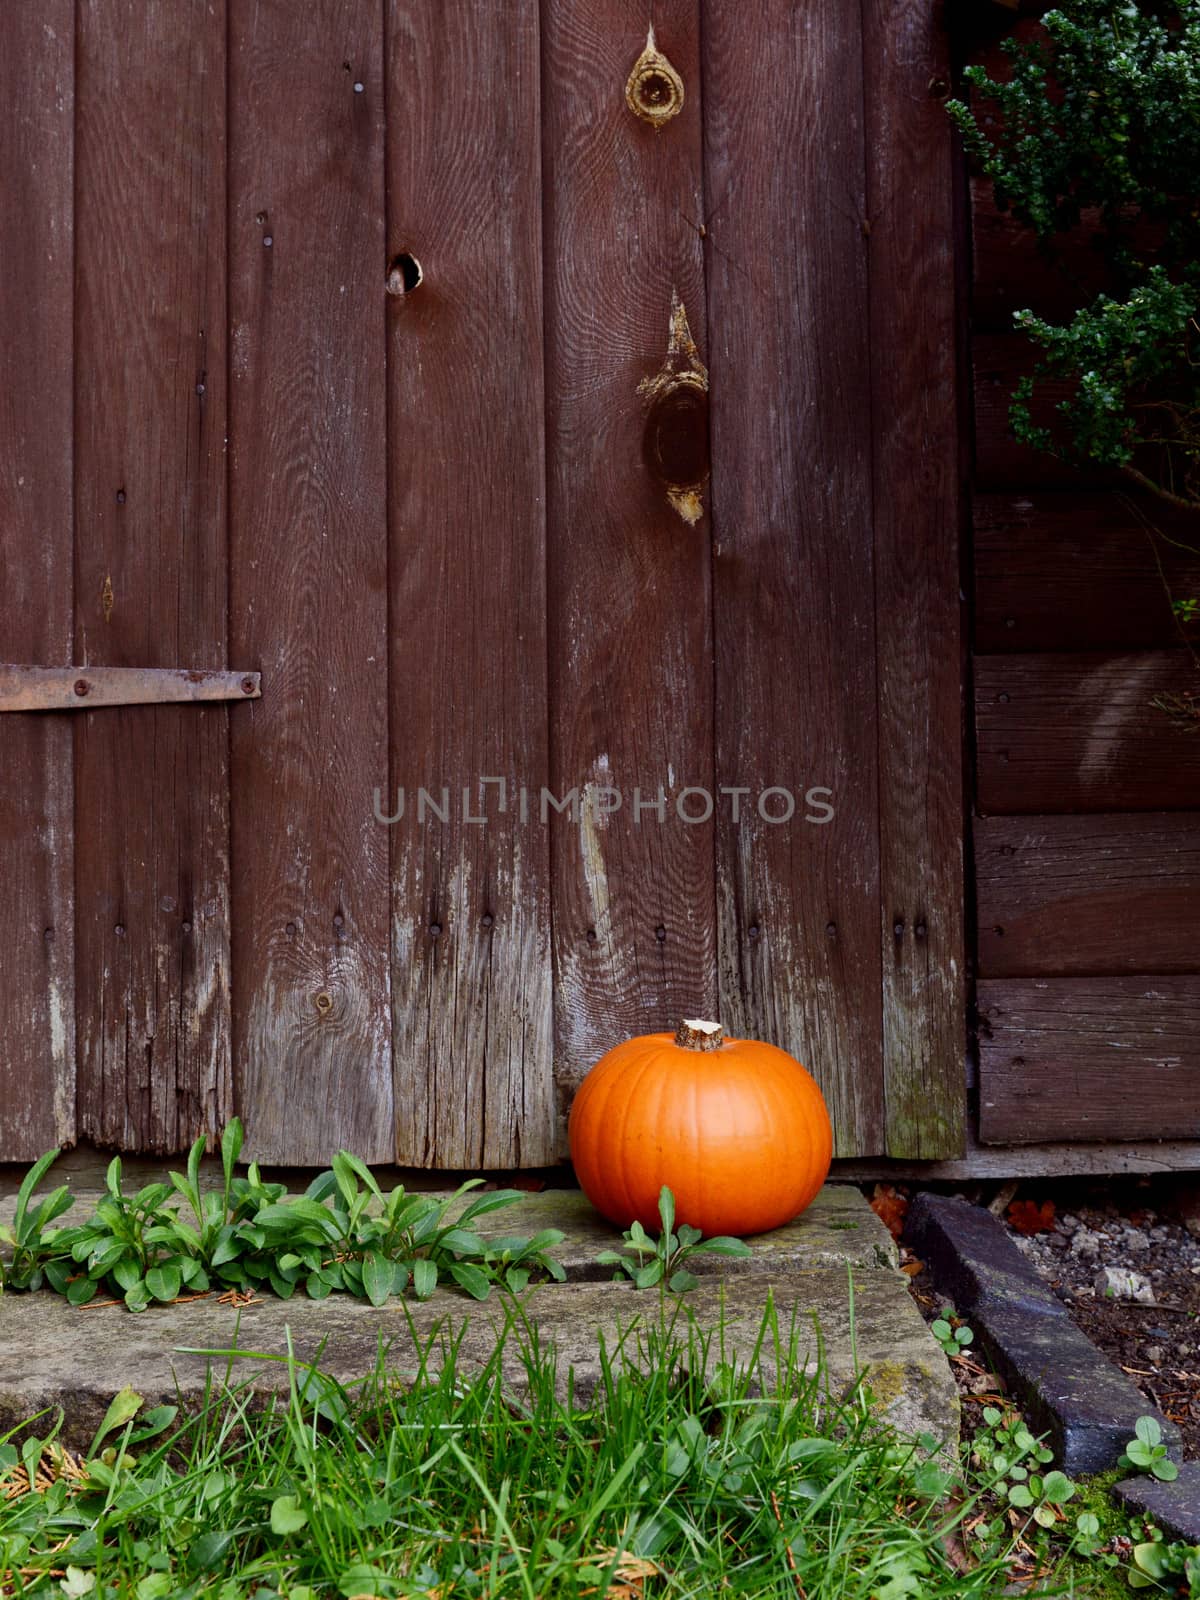 Small ripe pumpkin in front of a rustic wooden door